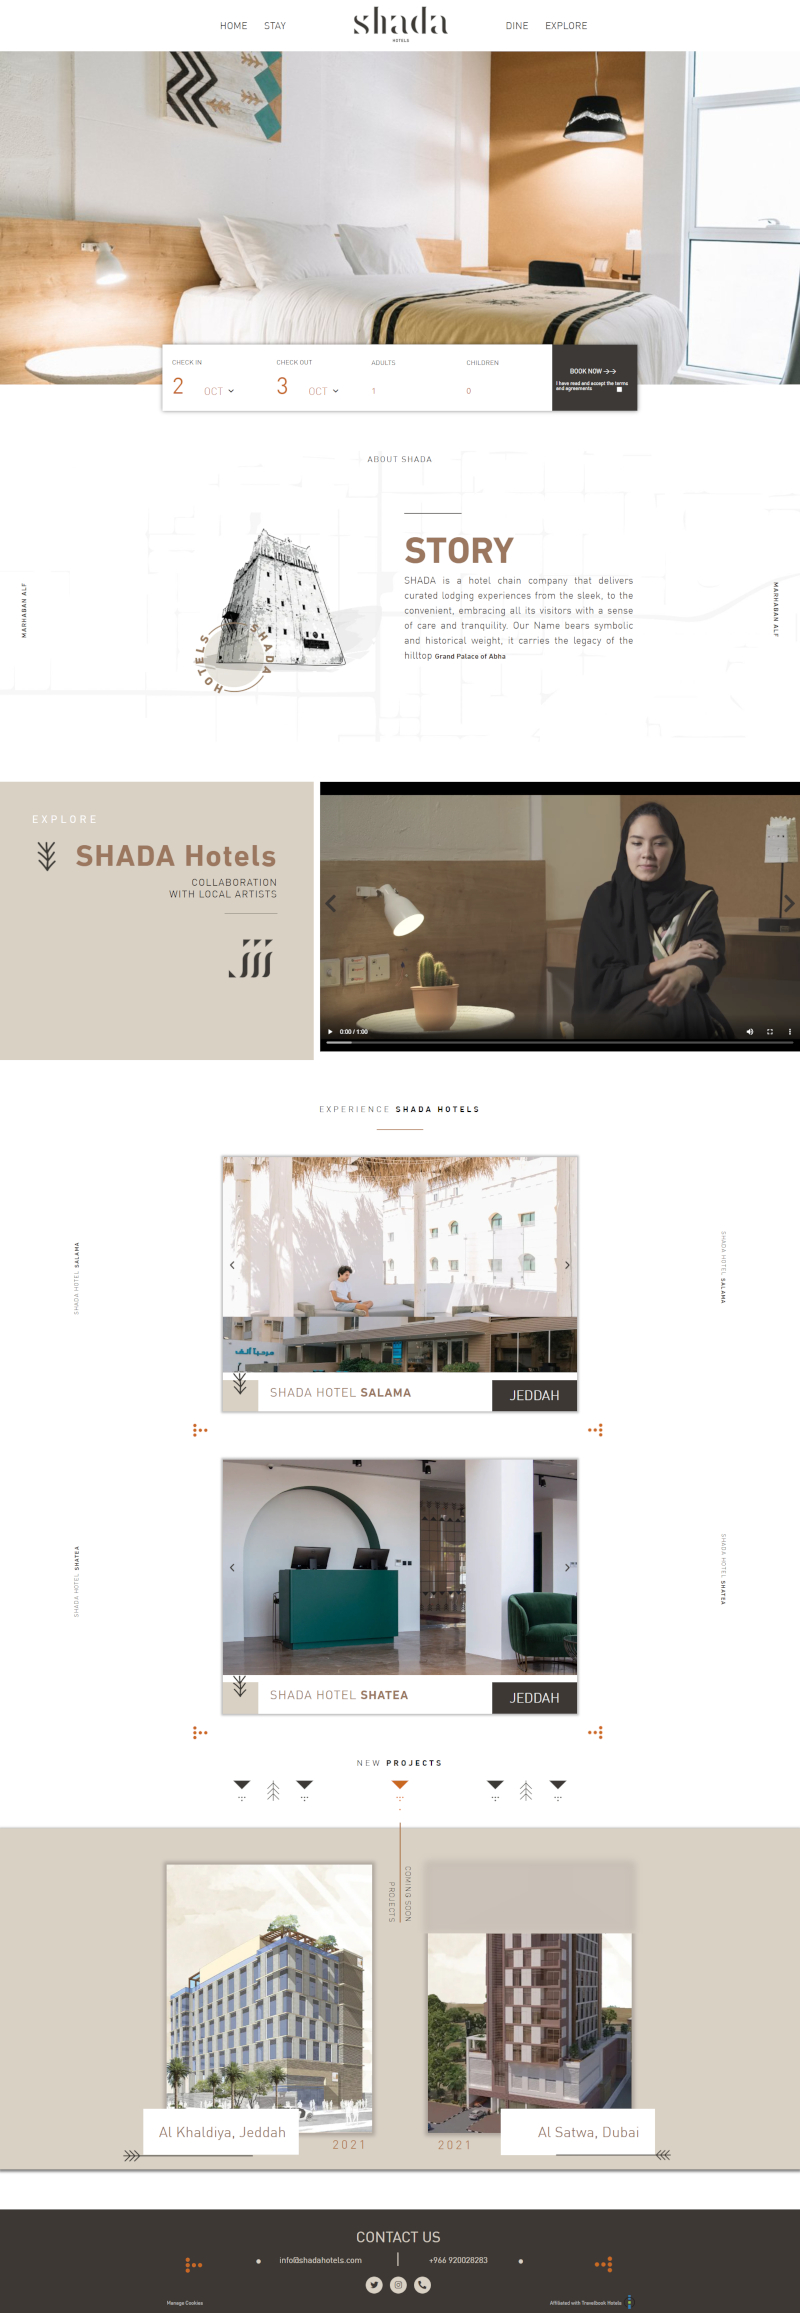 Desktop design for Shada Hotels